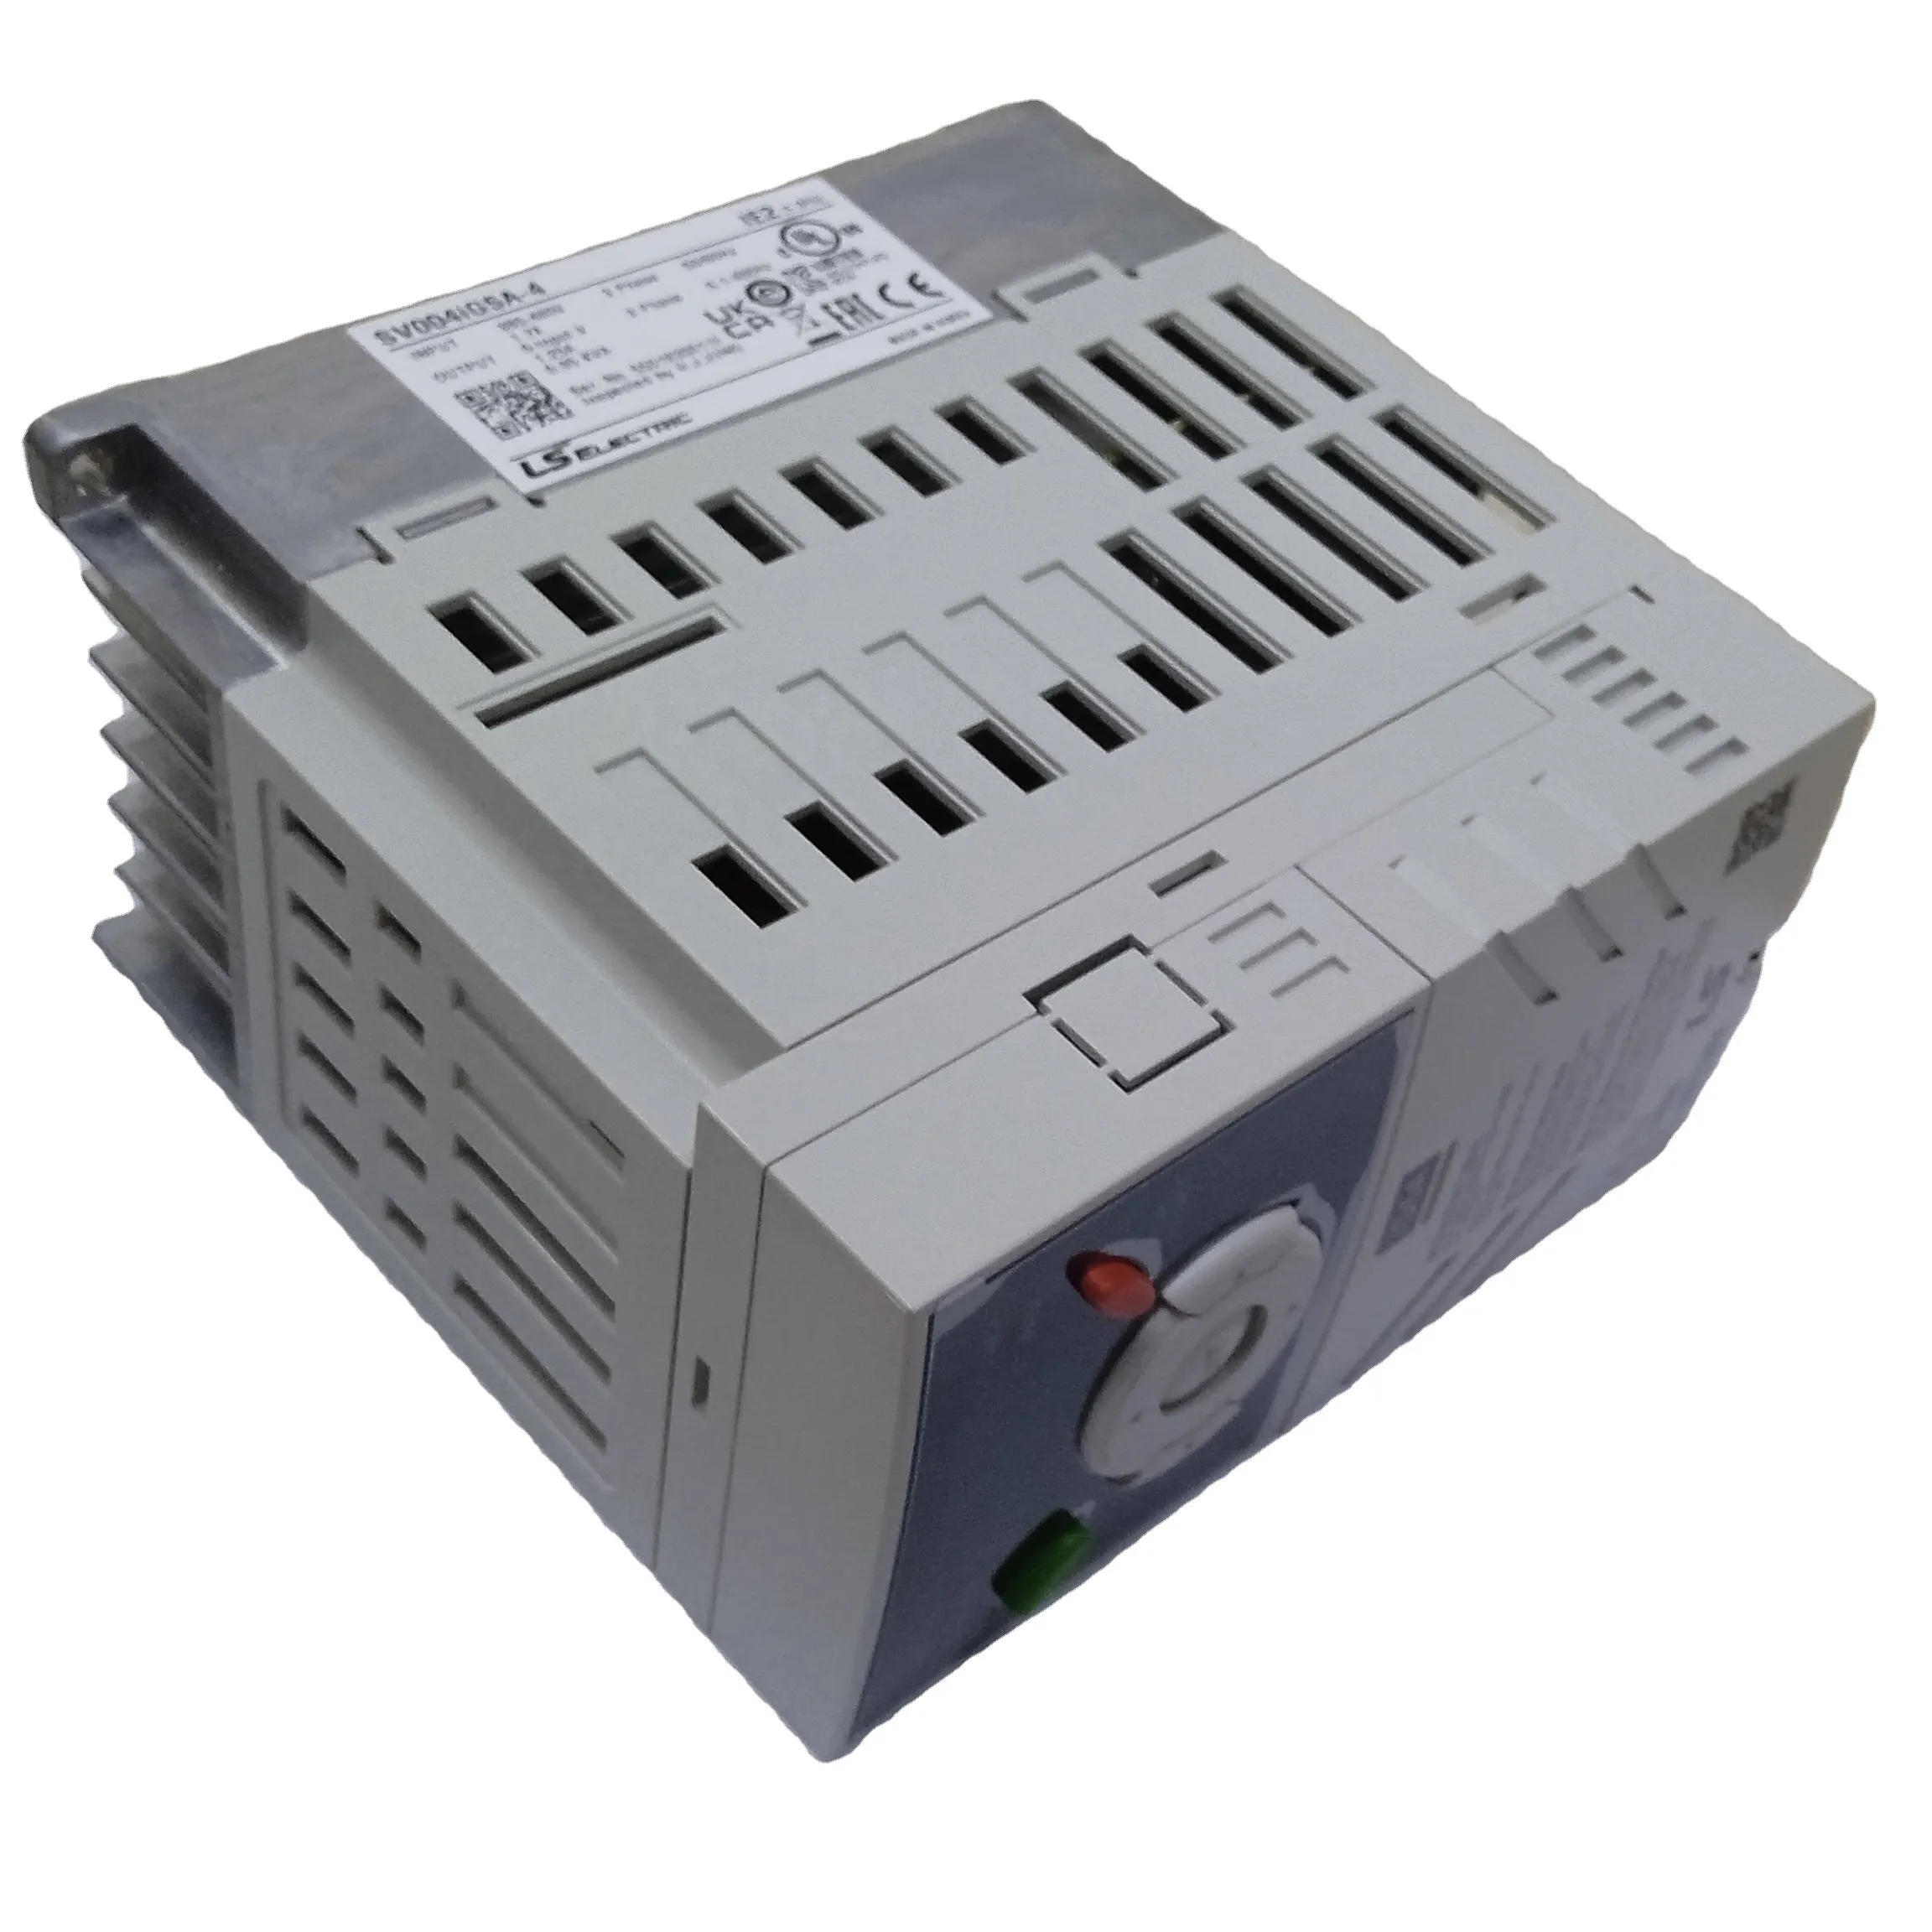 SV004IG5A-4 röle çıkışı programlanabilir kontrolör PLC